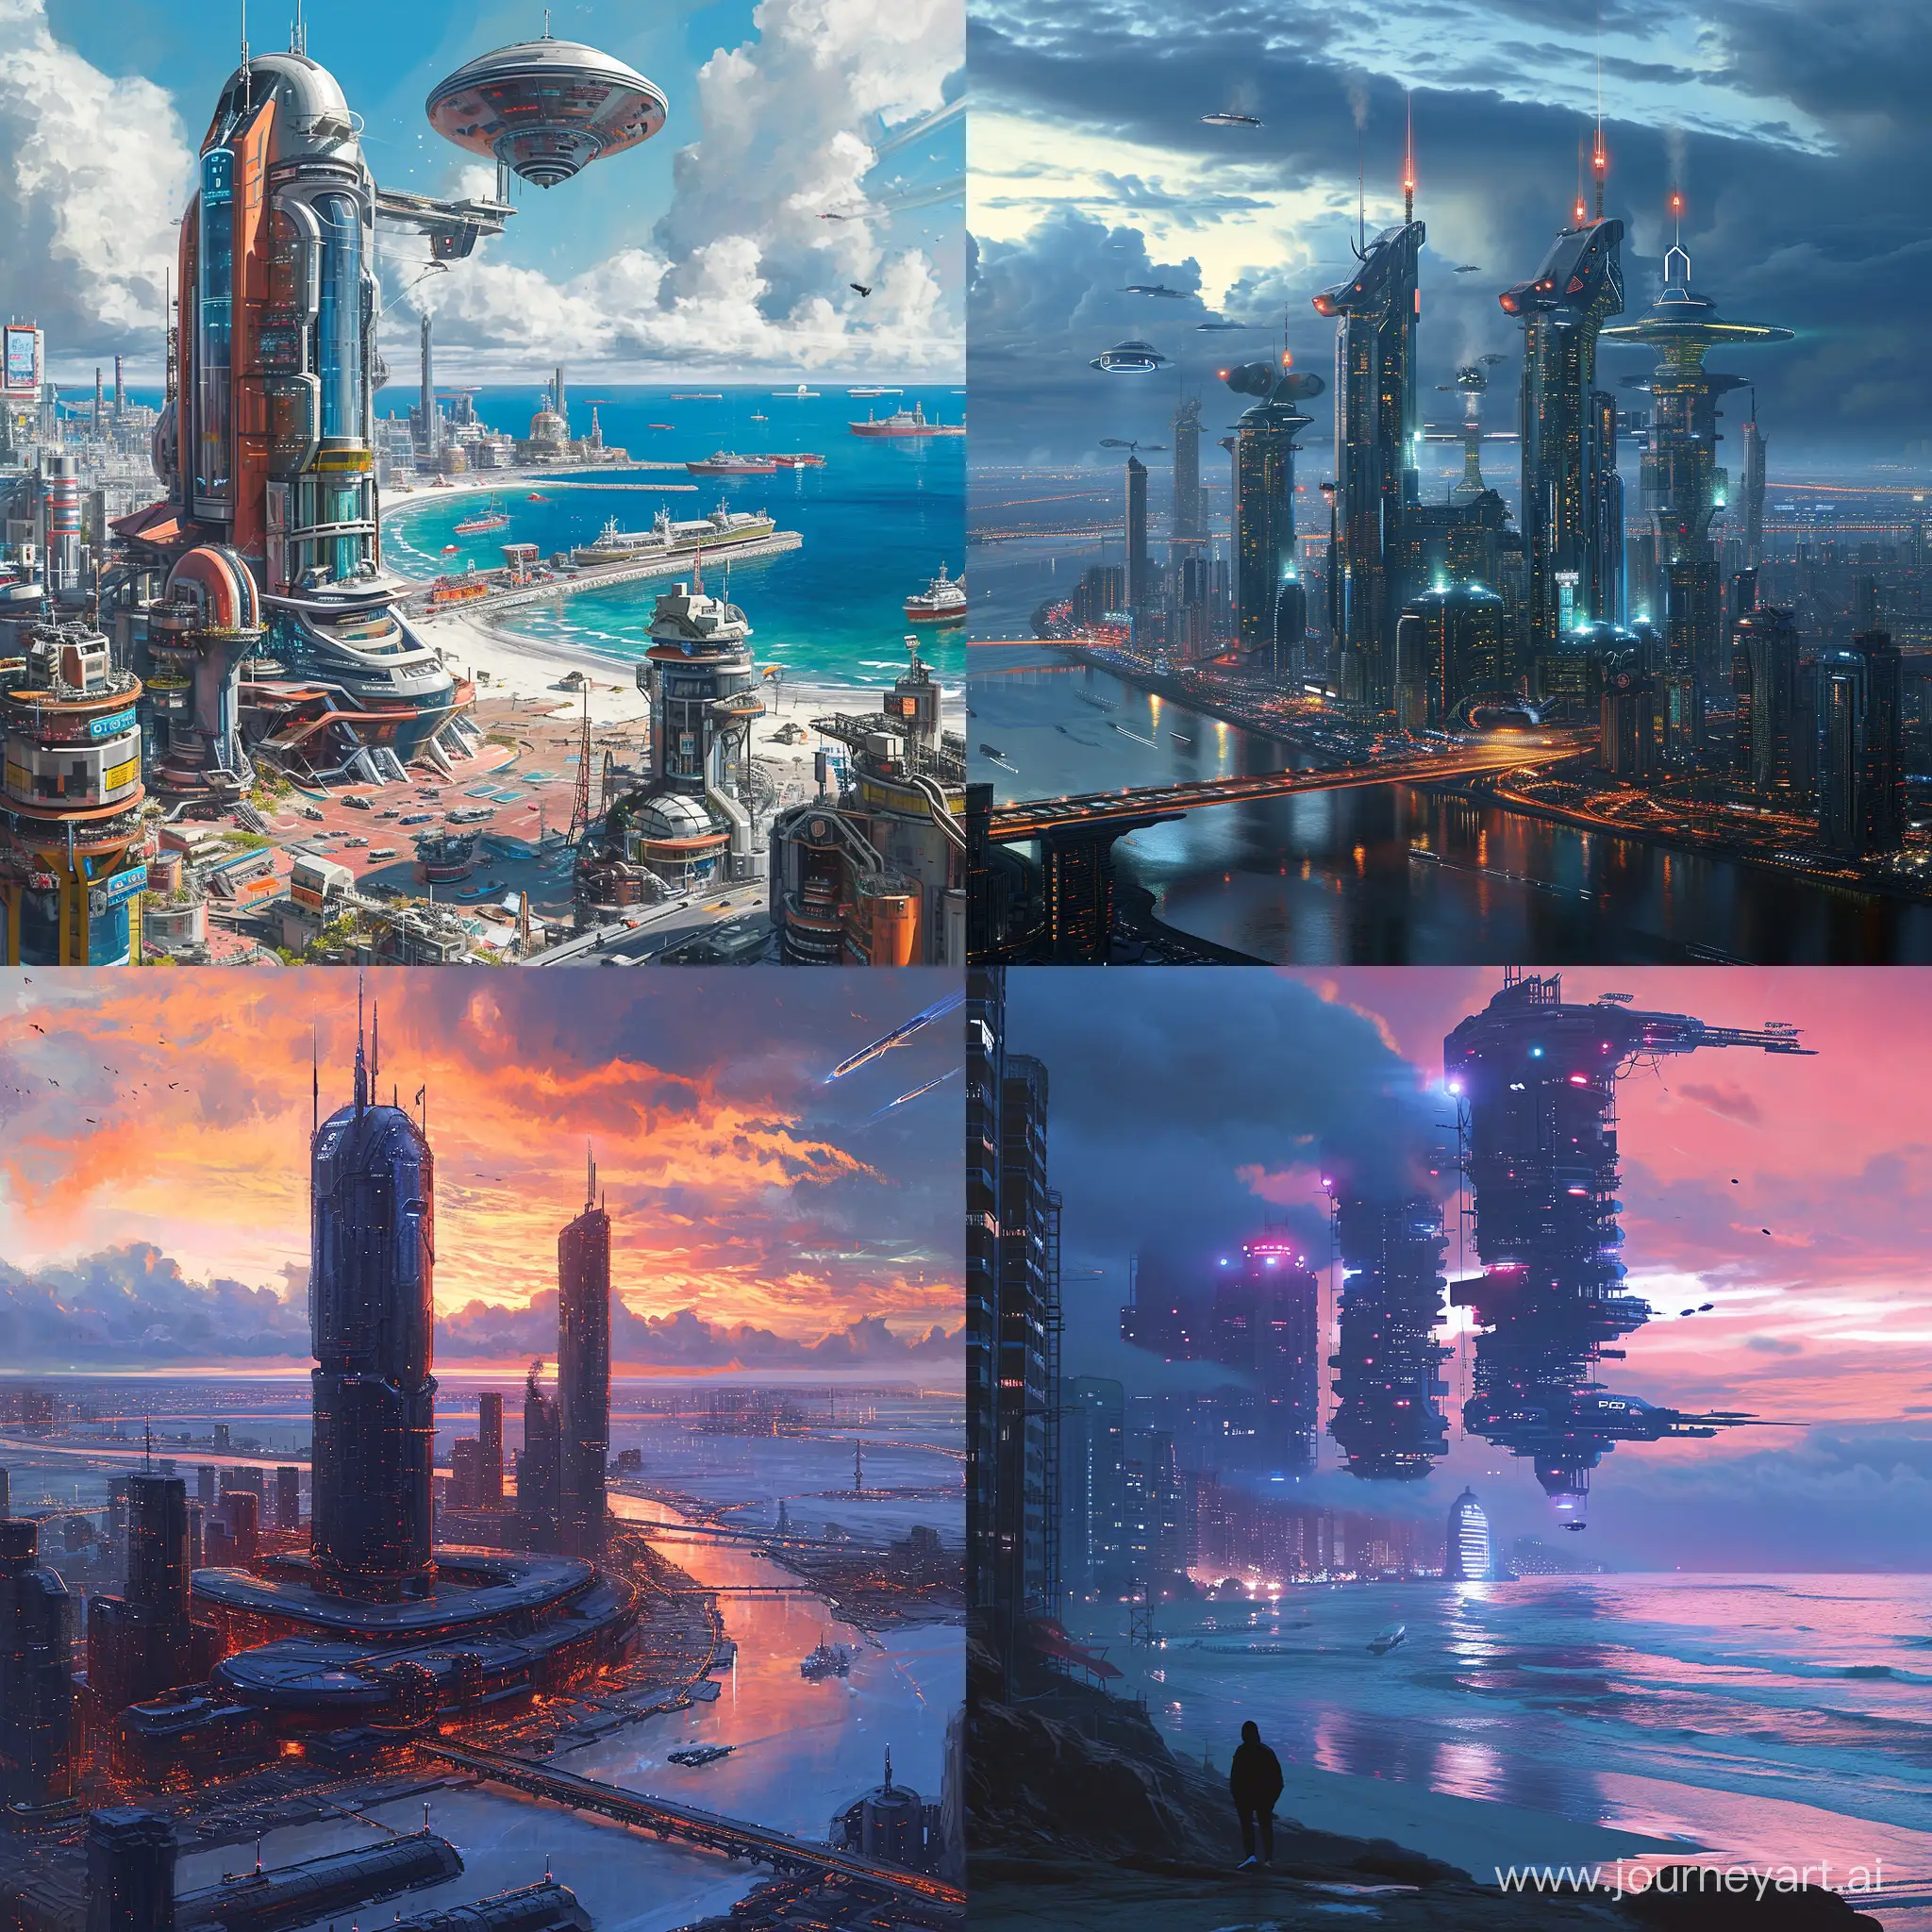 Futuristic-Vladivostok-Cityscape-in-2020s-SciFi-Style